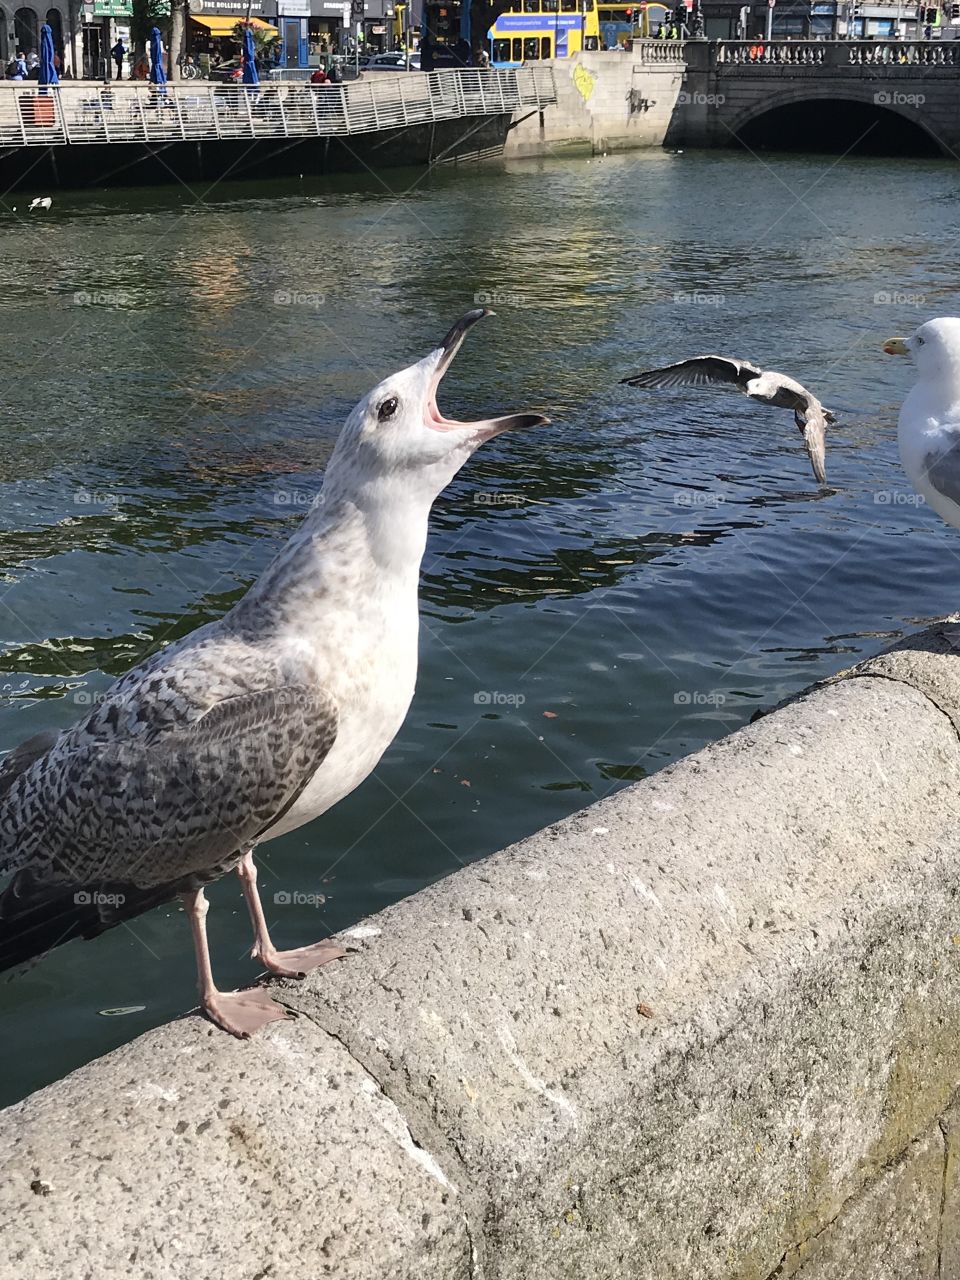 Seagulls Dublin Birds River Liffey August 2018